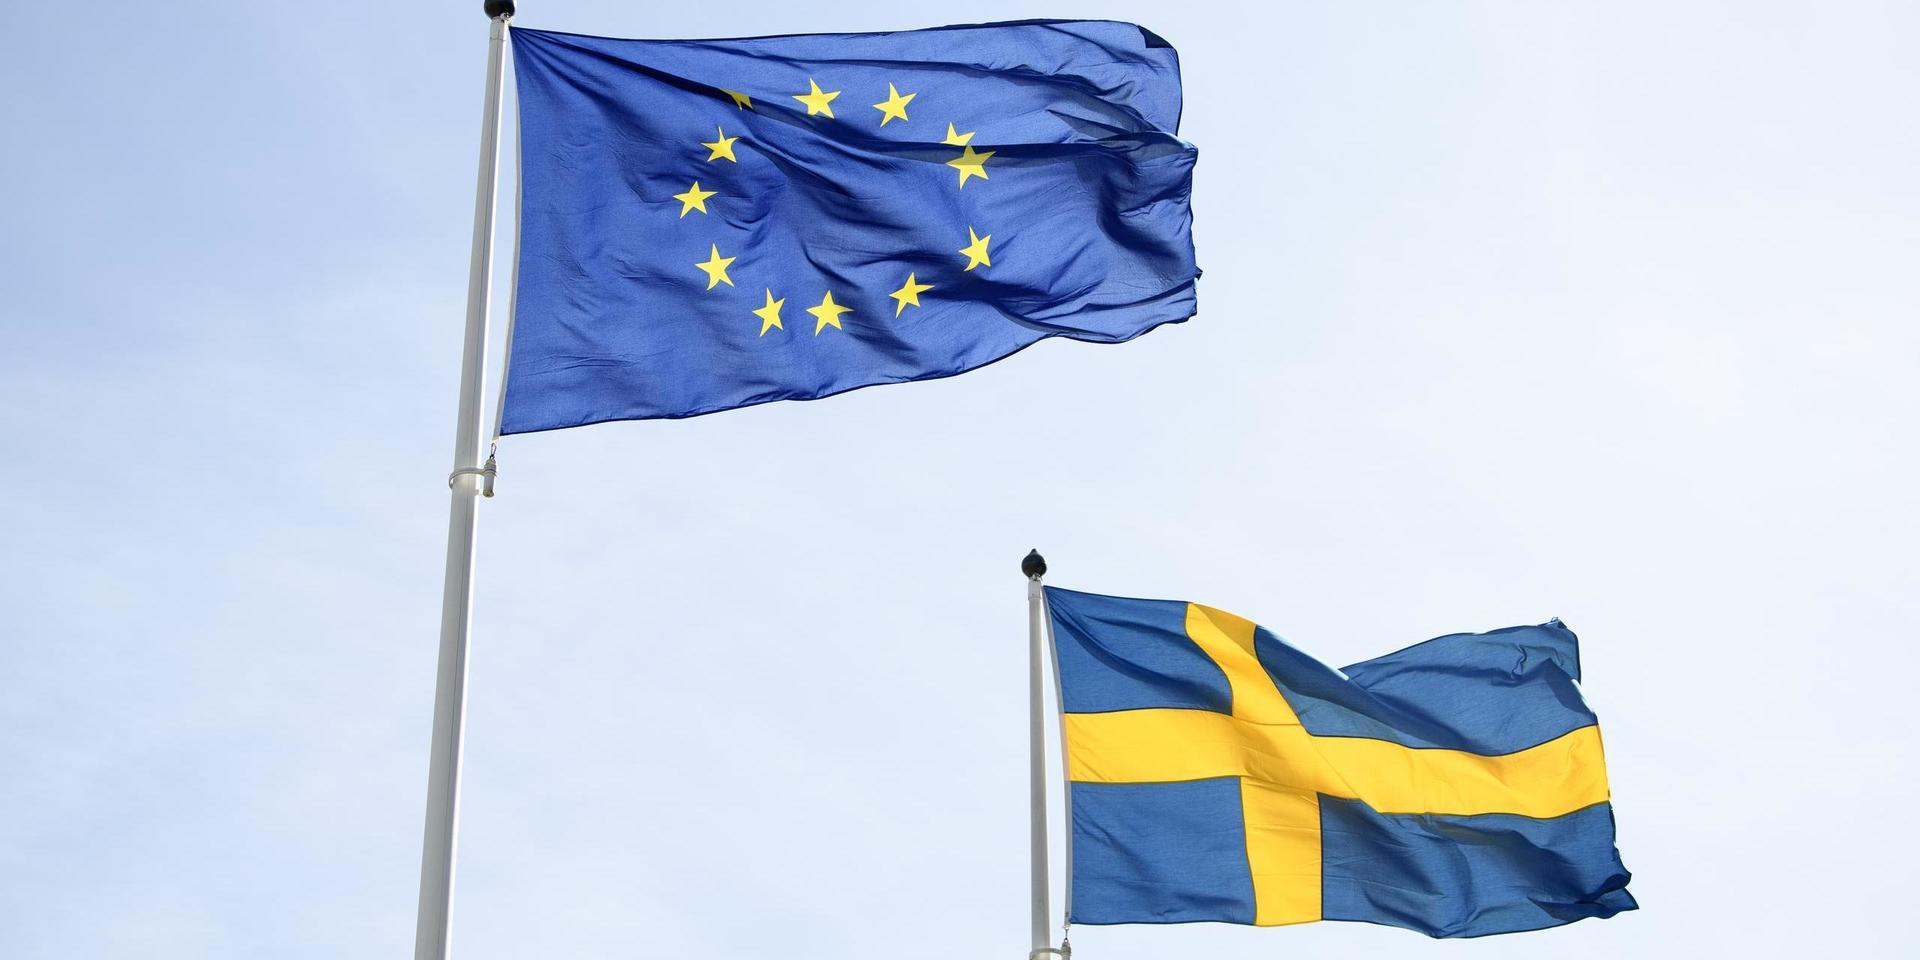 Svenskarnas stöd för EU-medlemskapet är fortsatt högt, men opinionen kan svänga snabbt.